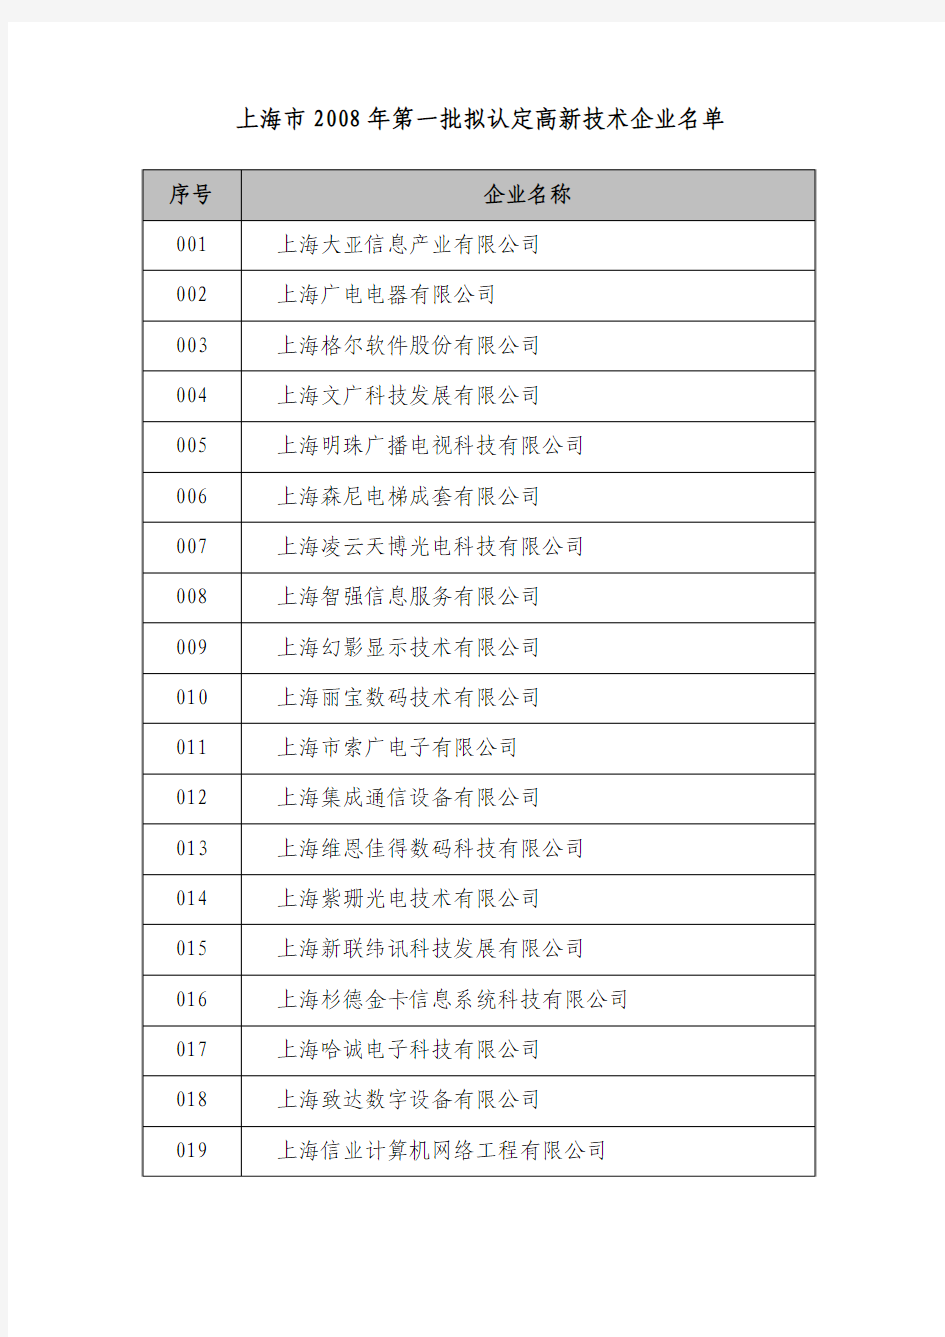 上海市 2008年第一批拟认定高新技术企业名单